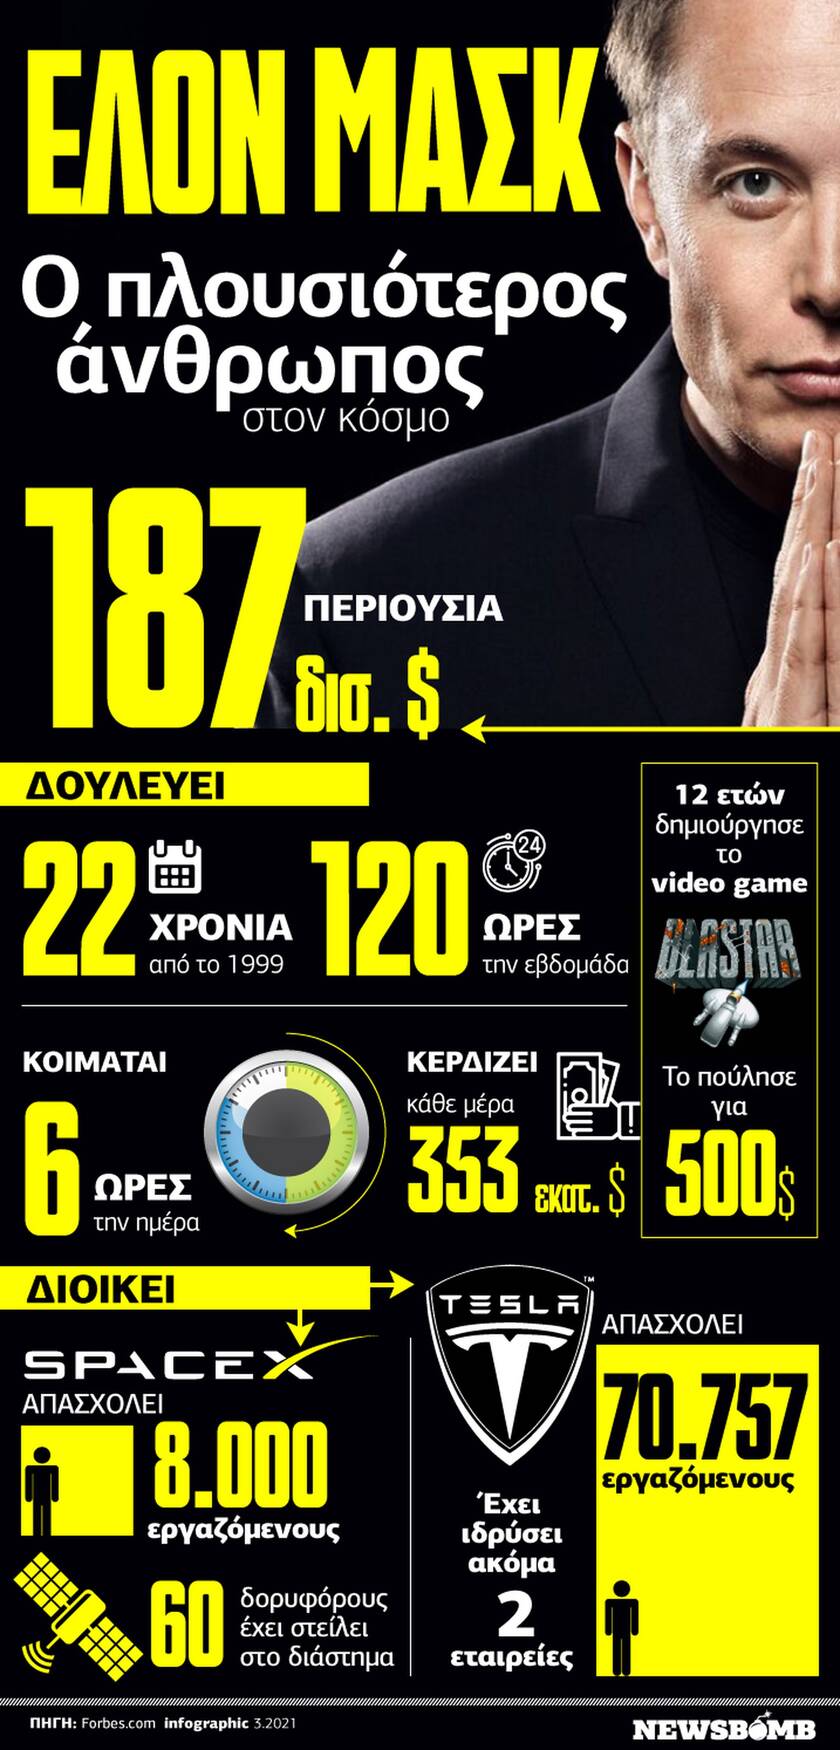 Η μεγαλοφυΐα του Έλον Μασκ μέσα από στοιχεία και αριθμούς - Δείτε το Infographic του Newsbomb.gr